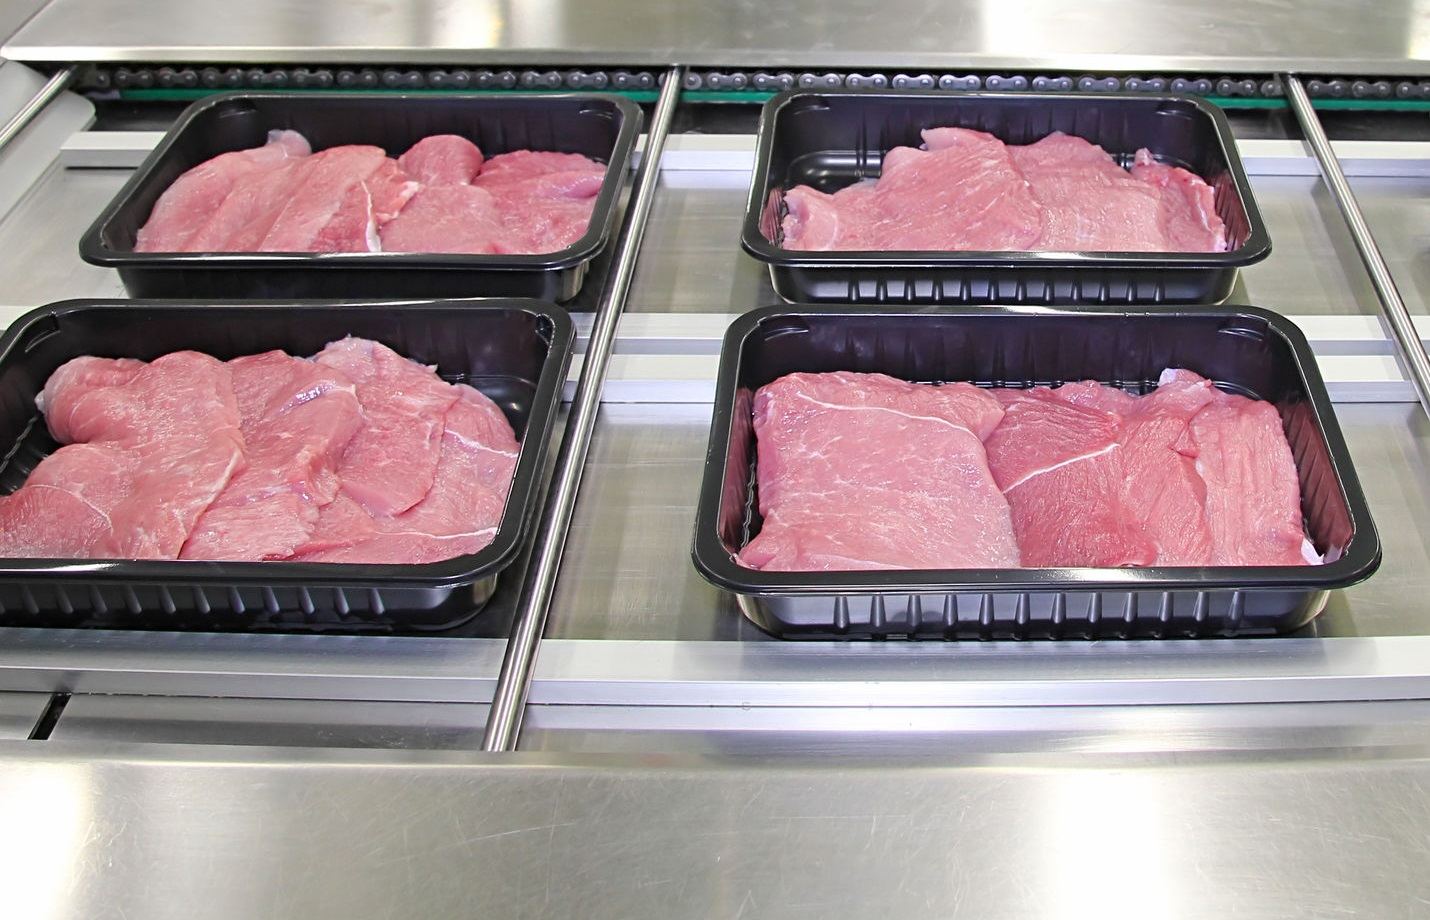 Didžiausias JAV kiaulienos gamintojas uždaro gamyklą ir perspėja apie mėsos trūkumą - DELFI Verslas